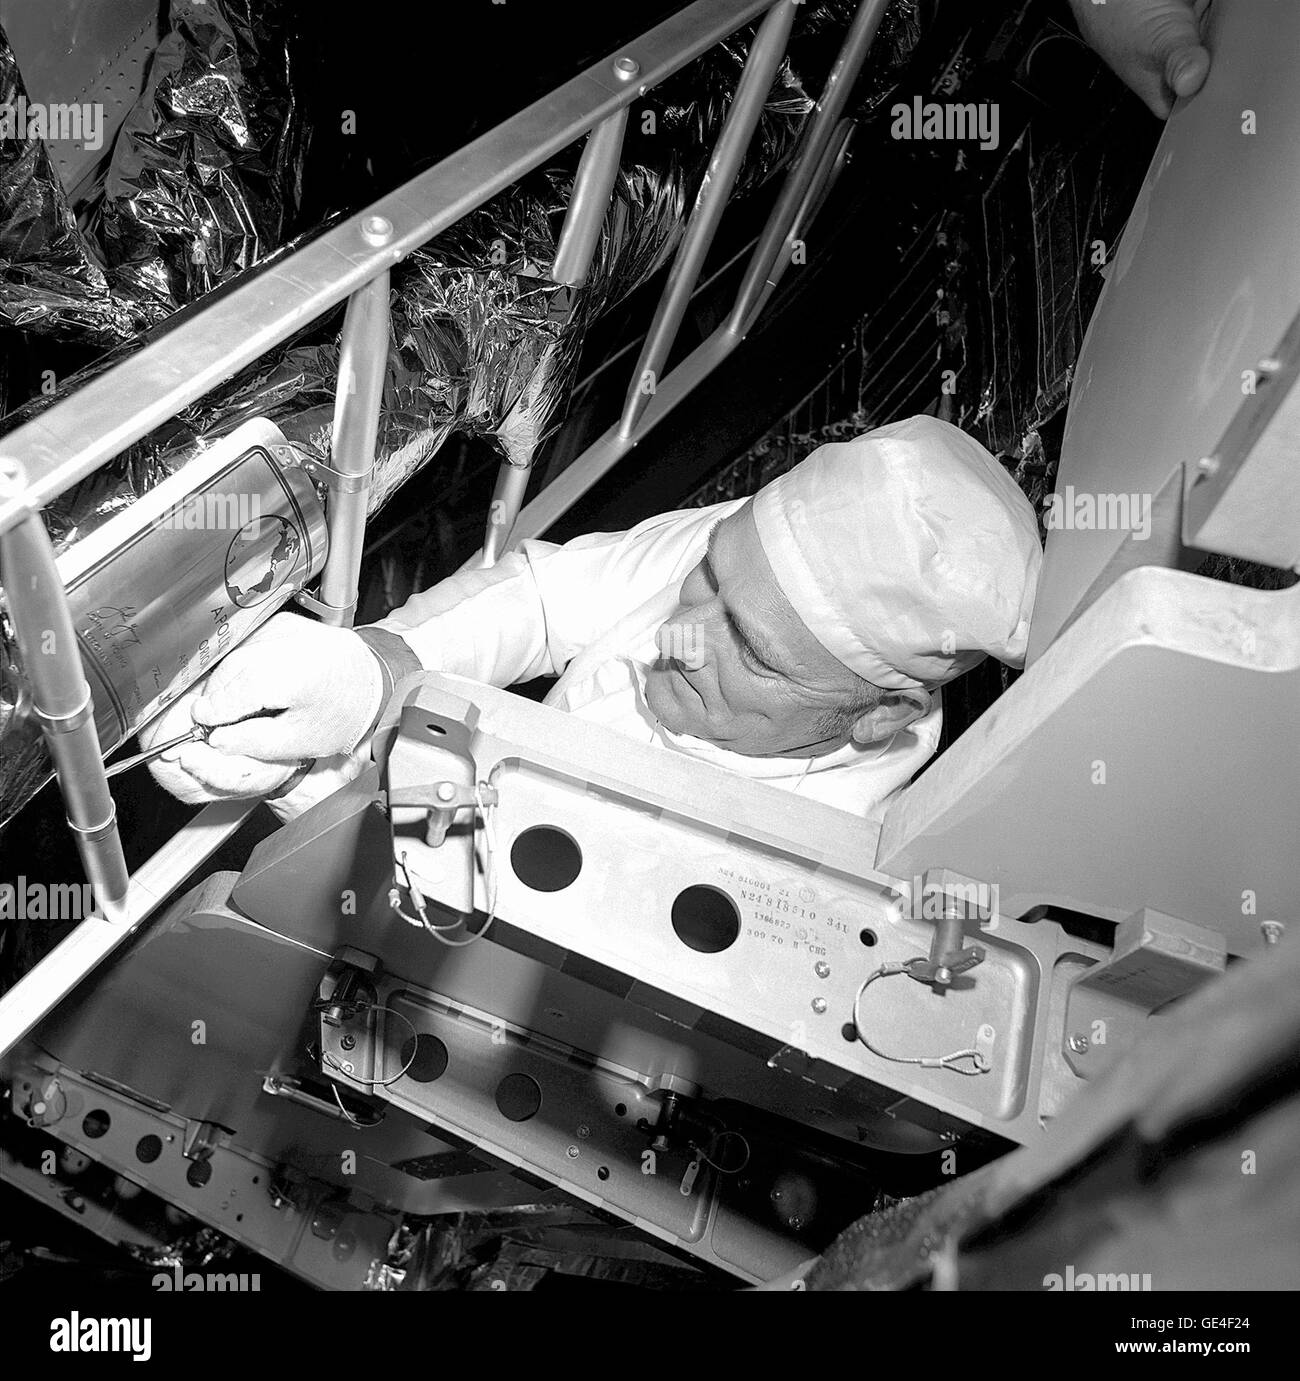 Arbeiten im Inneren der Apollo 16 Saturn V-Rakete auf der Startrampe, legt Grumman Aerospace Corporation Techniker Ken Krähe eine Gedenktafel mit Namen und Unterschriften der Apollo 16-Crew, das vordere Bein die Mondfähre Abstieg Etappe. Die Edelstahl-Plakette, die auf der Mondoberfläche geblieben, misst 18 x 23 cm (sieben von neun Zoll) und trägt die Namen der Astronauten von Apollo 16, John W. Young, mission Kommandant; Thomas K. Mattingly II, Befehl Modul-Pilot; und Charles M. Duke, Jr., Pilot der Mondlandefähre.  Bild-Nr.: 72P-0113 Datum: 10. April 1972 Stockfoto